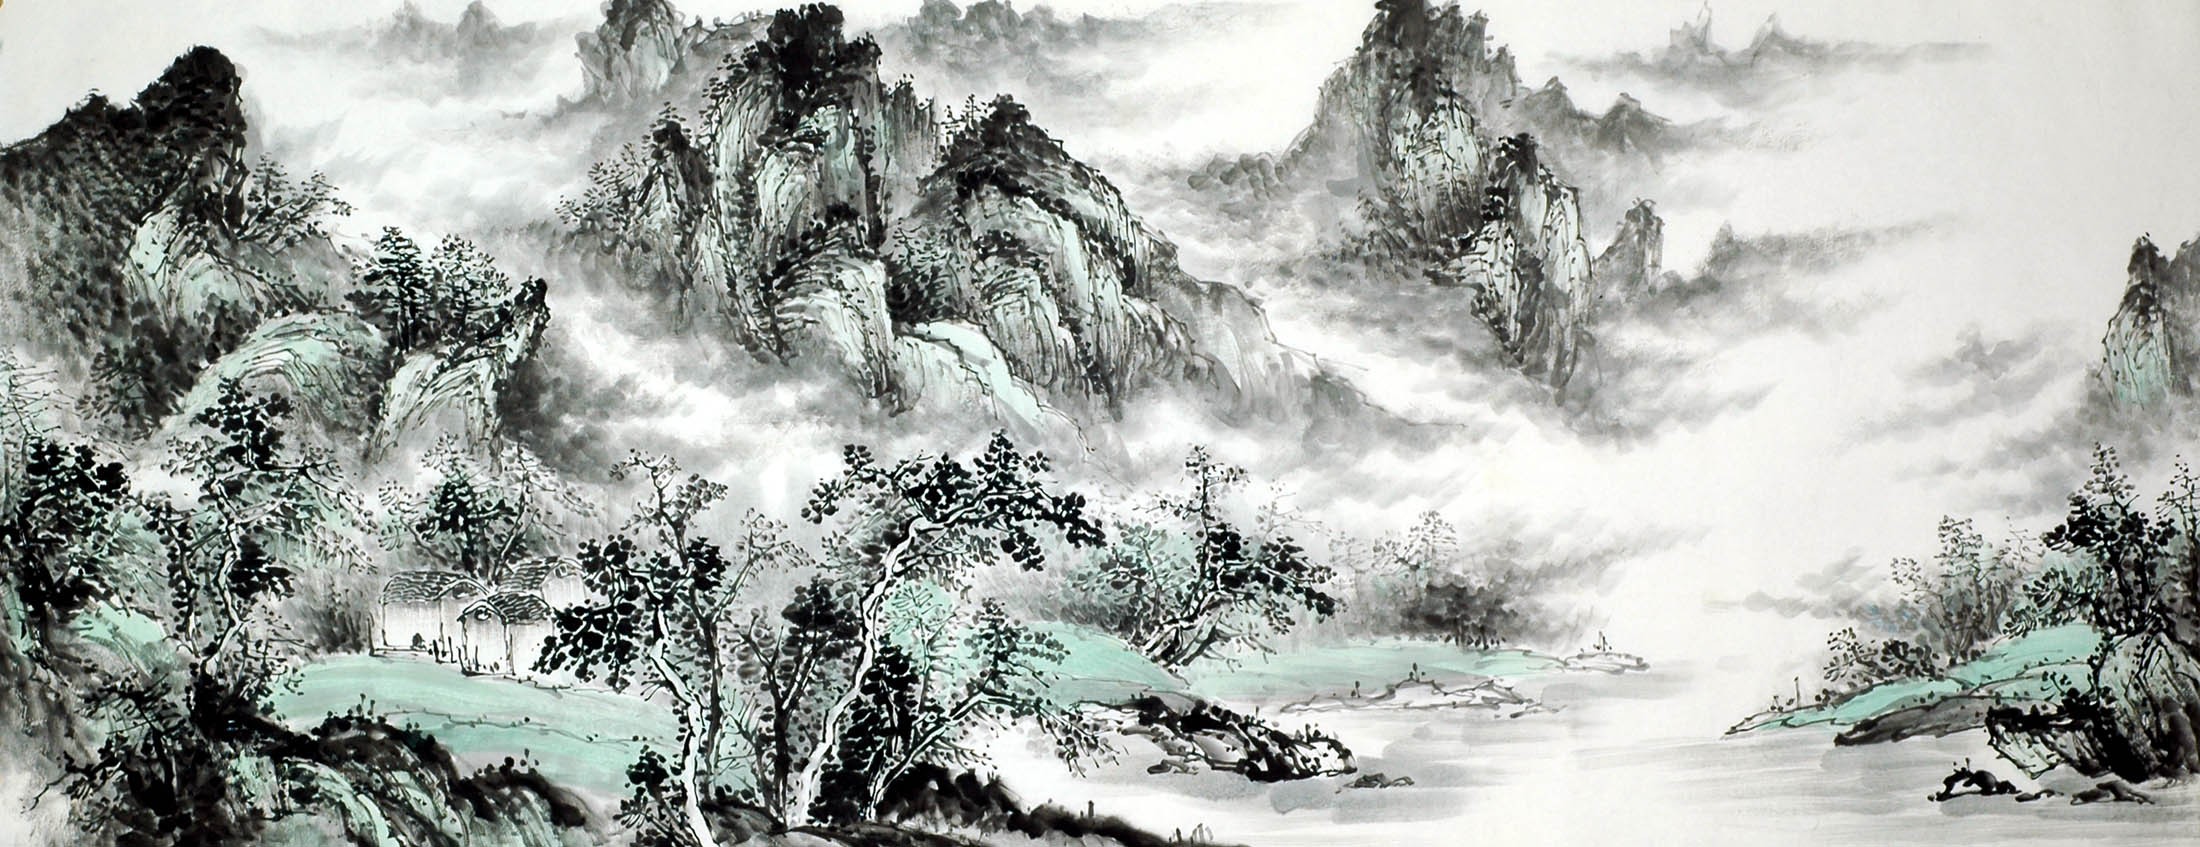 Chinese Landscape Painting - CNAG010399